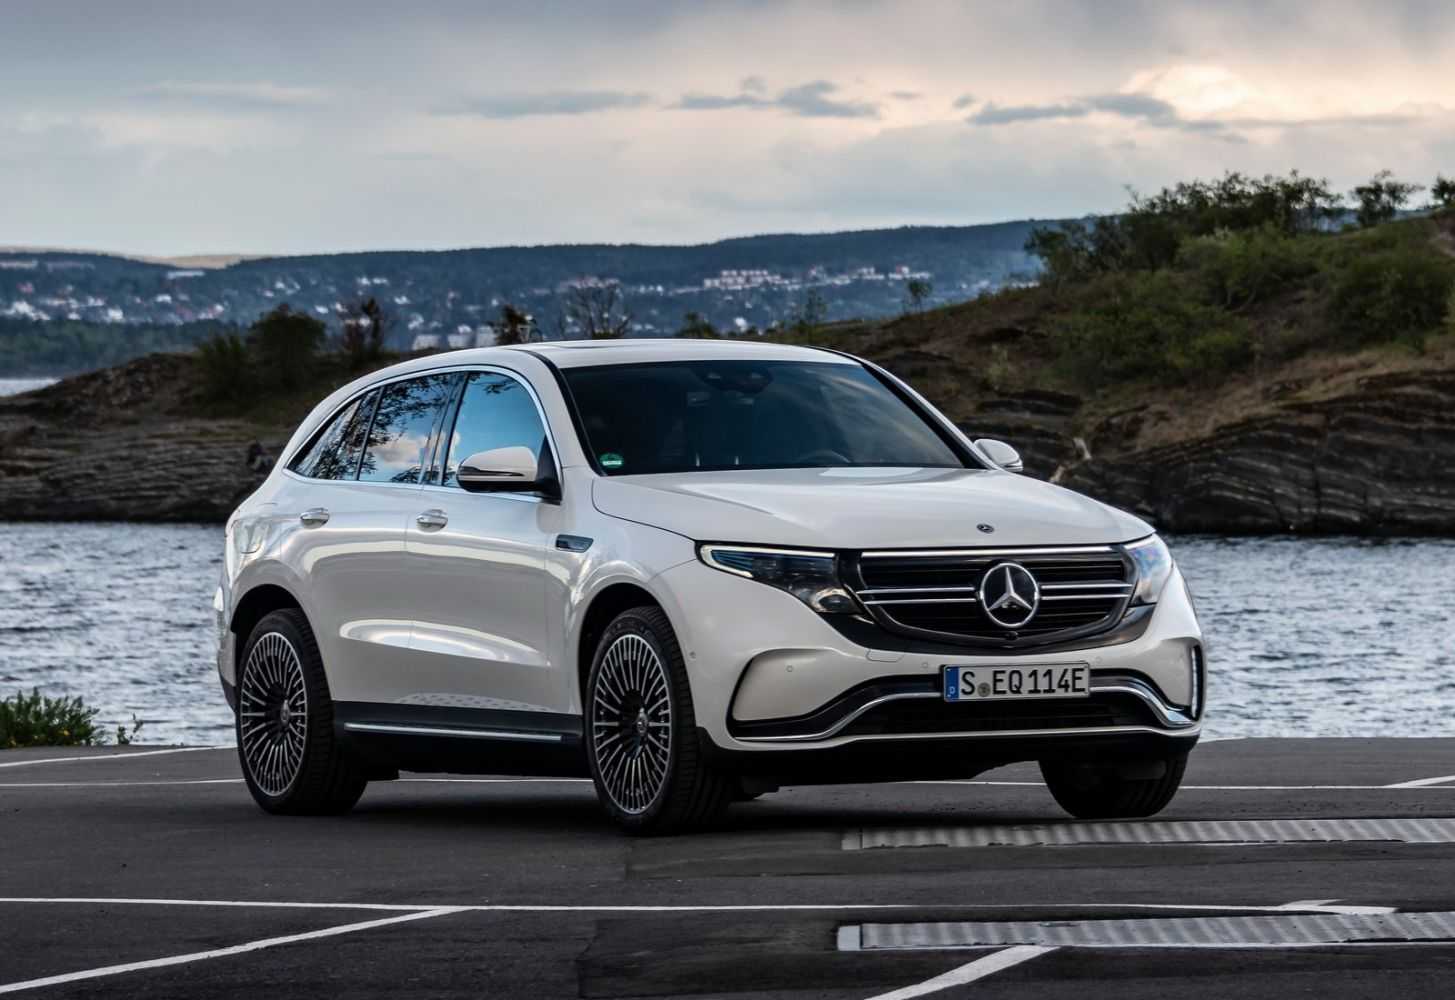 Mercedes eqc 2020 цена в россии! фото, старт продаж, запас хода